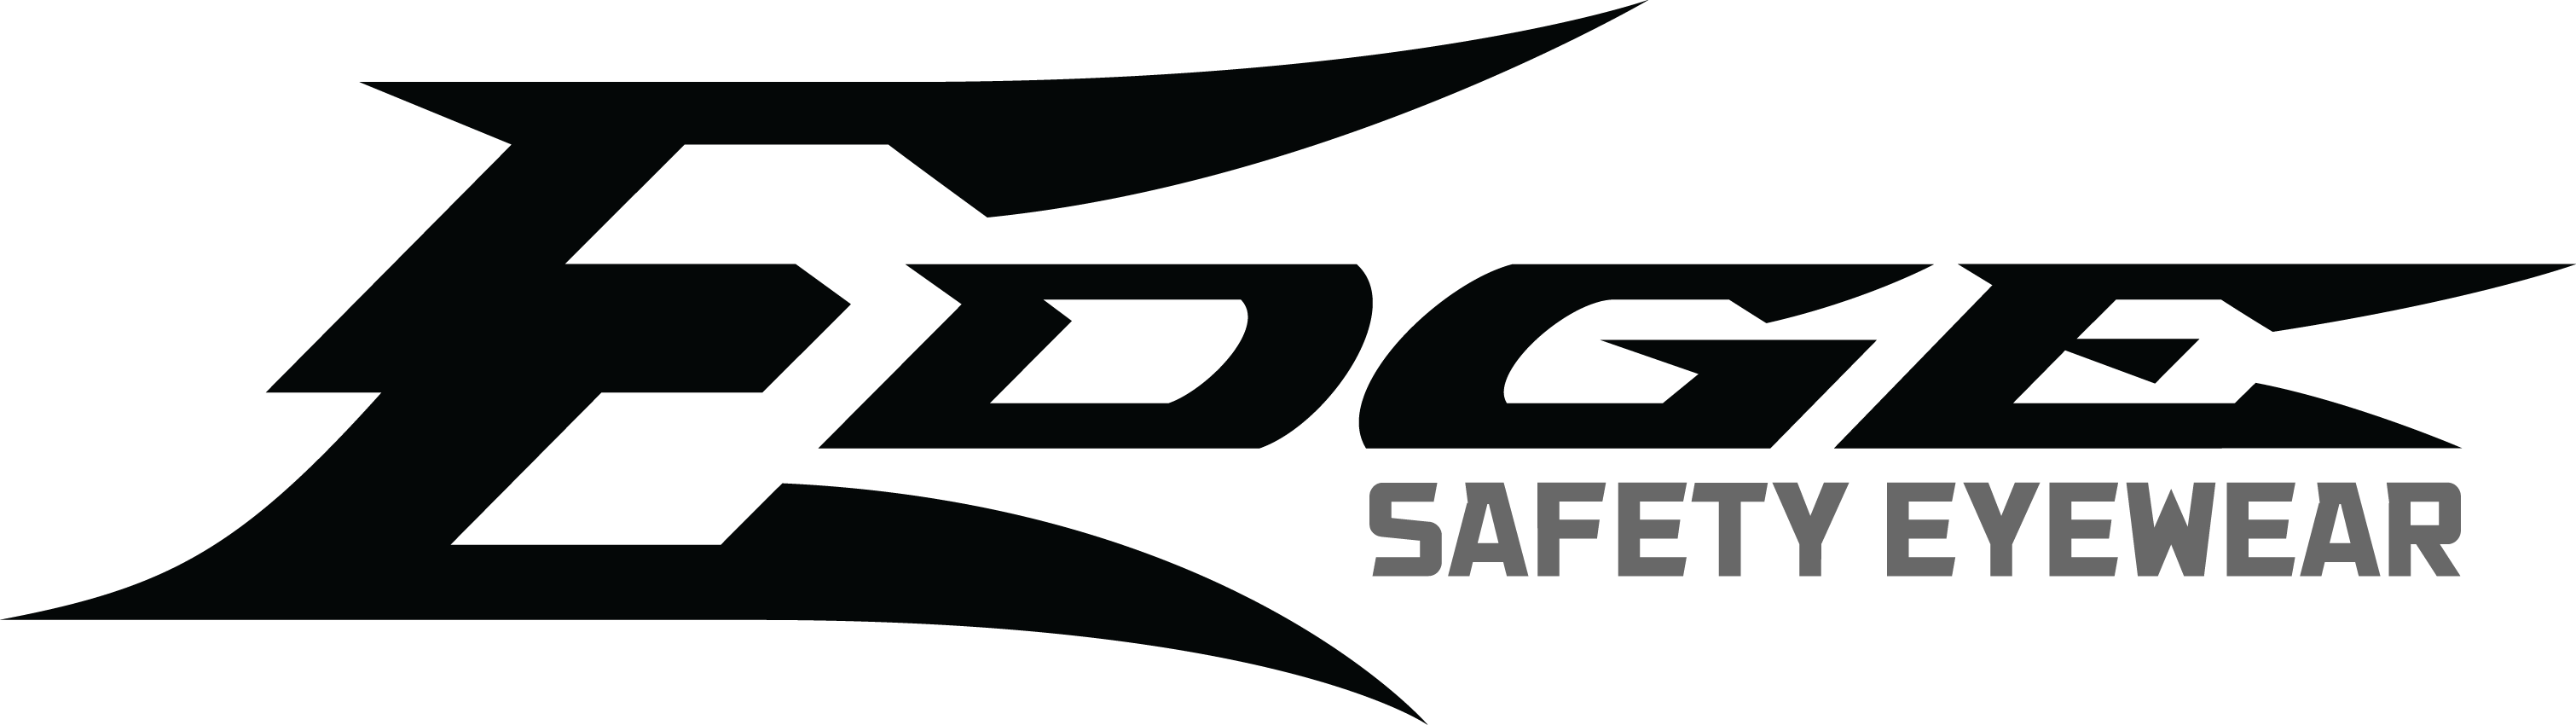 Edge-Safety-US_Logo-Black